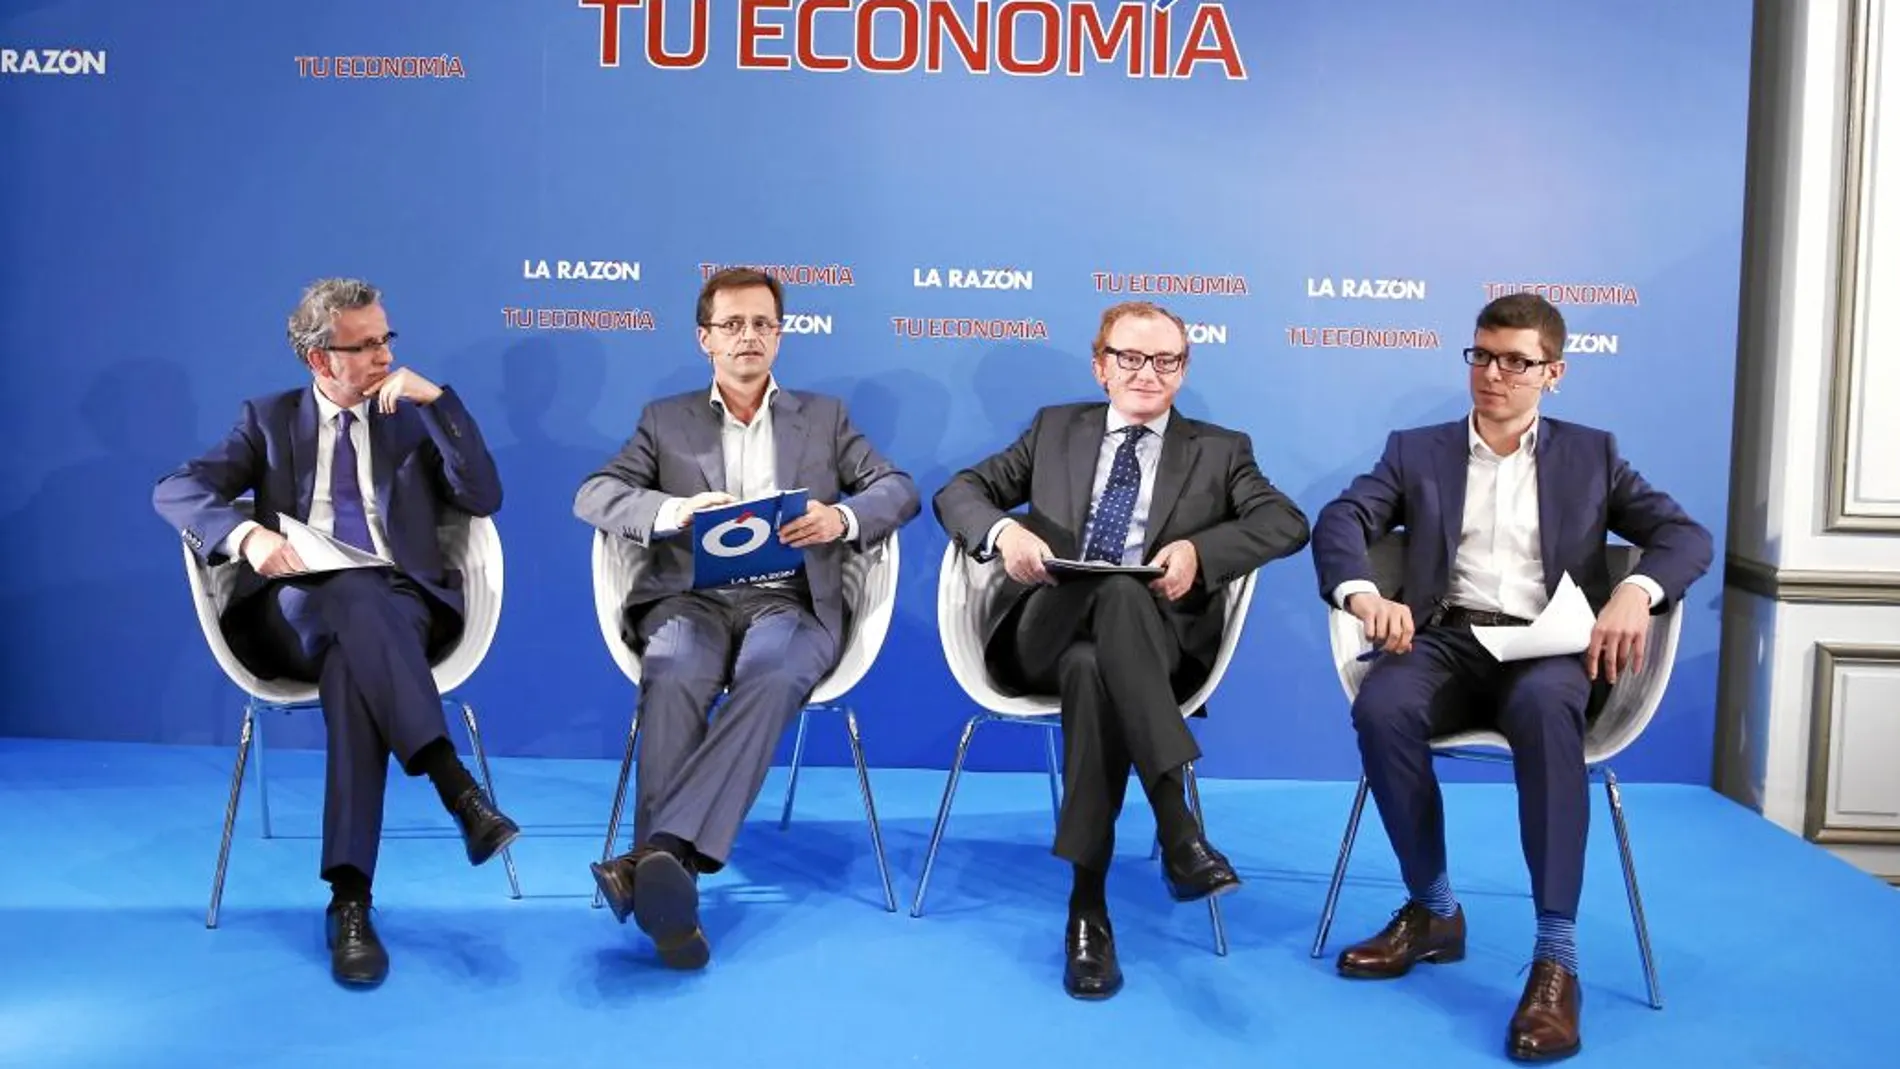 De izquierda a derecha: J. M Valdés, A. Cabrales, J. Delgado y O. Medina